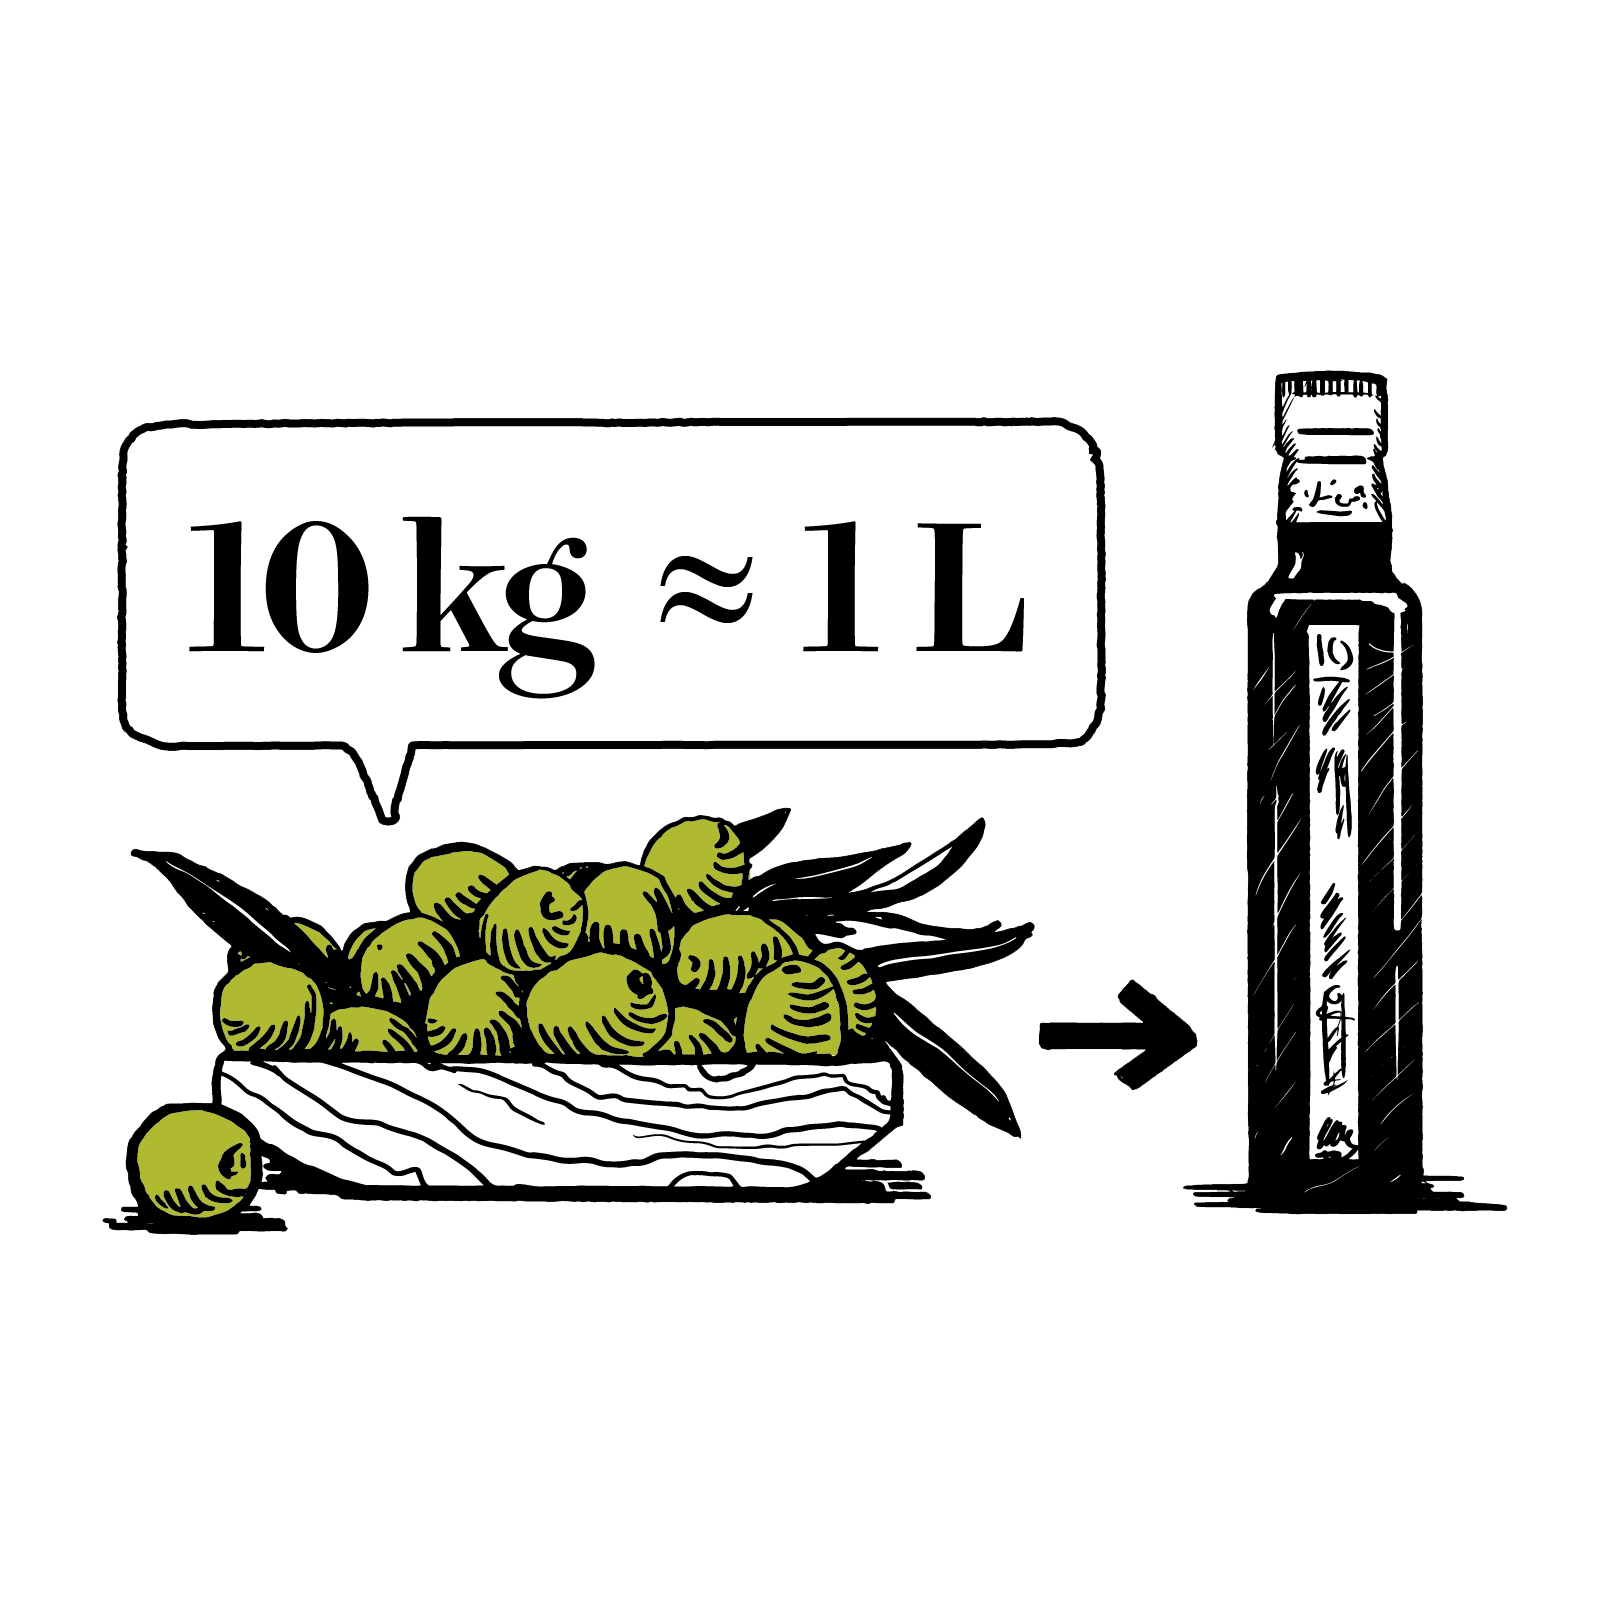 oliven10kg